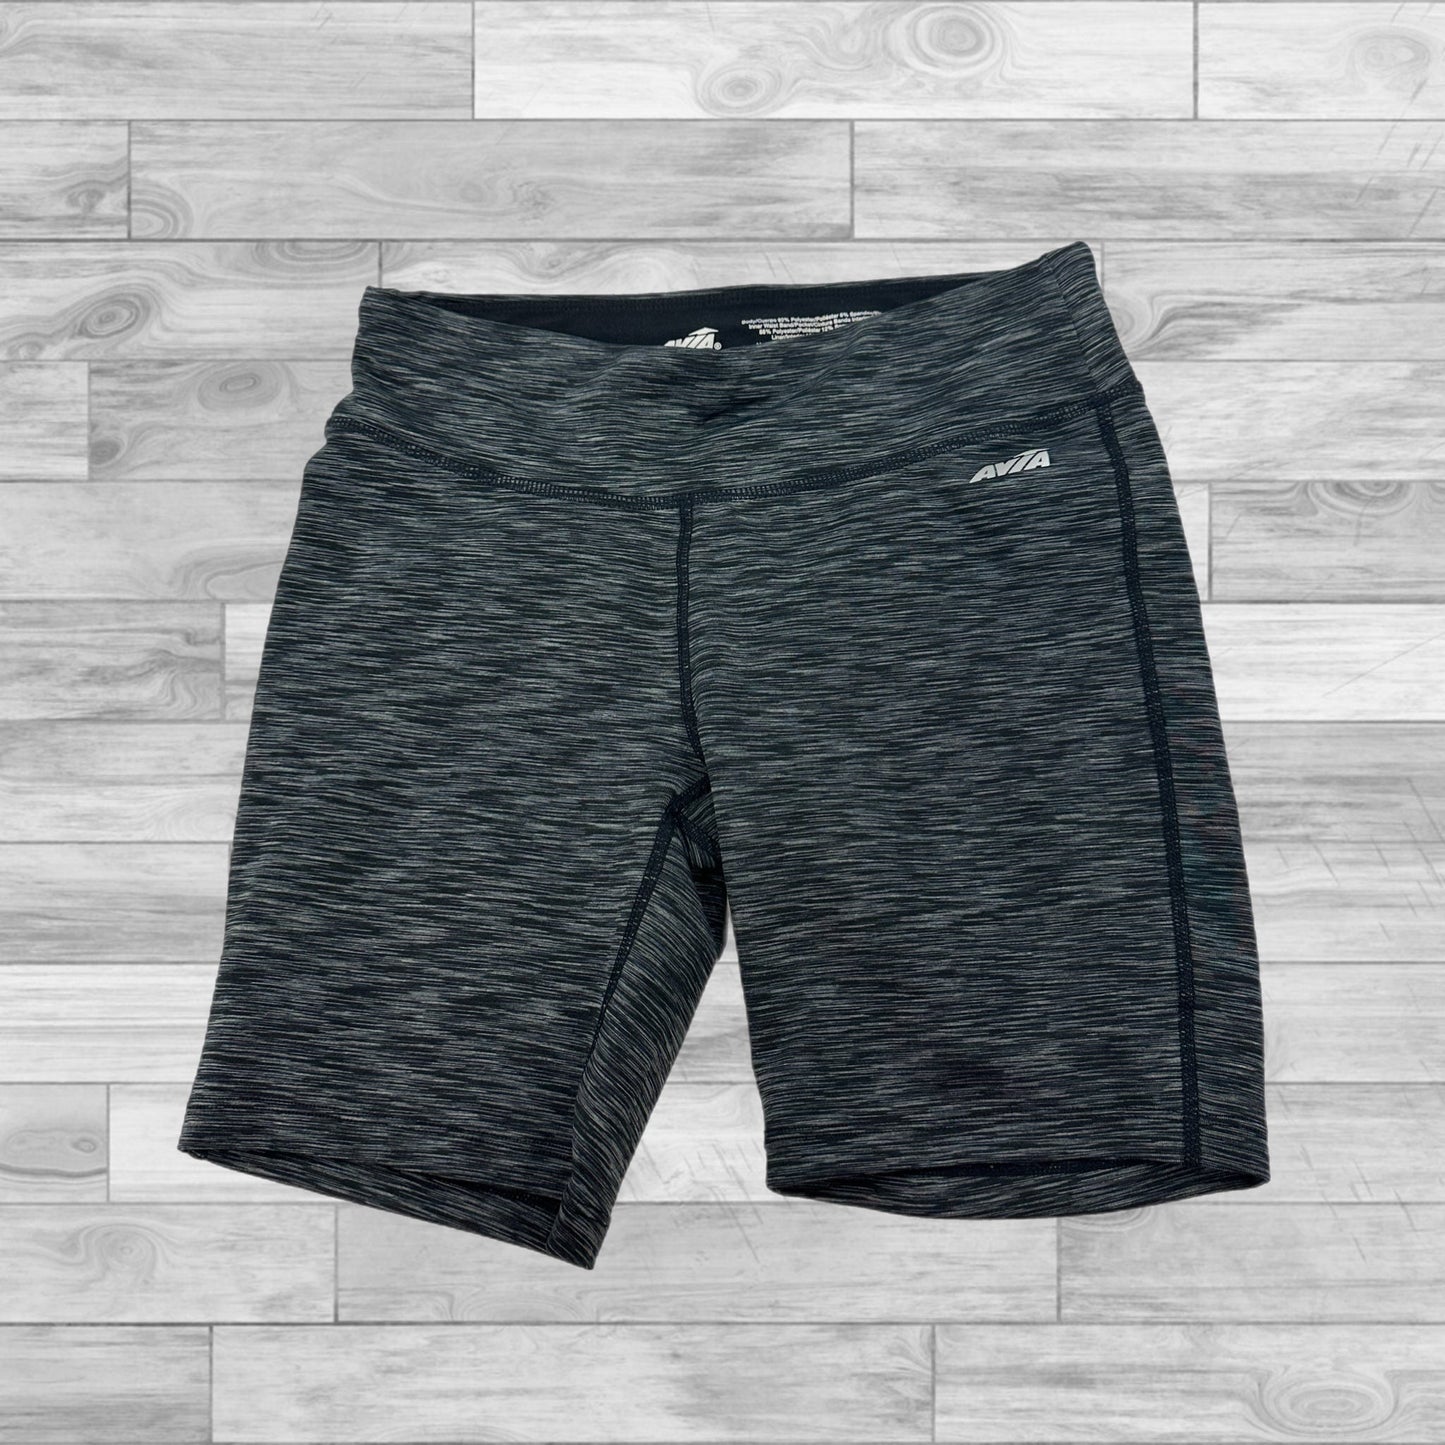 Grey Athletic Shorts Avia, Size Xs